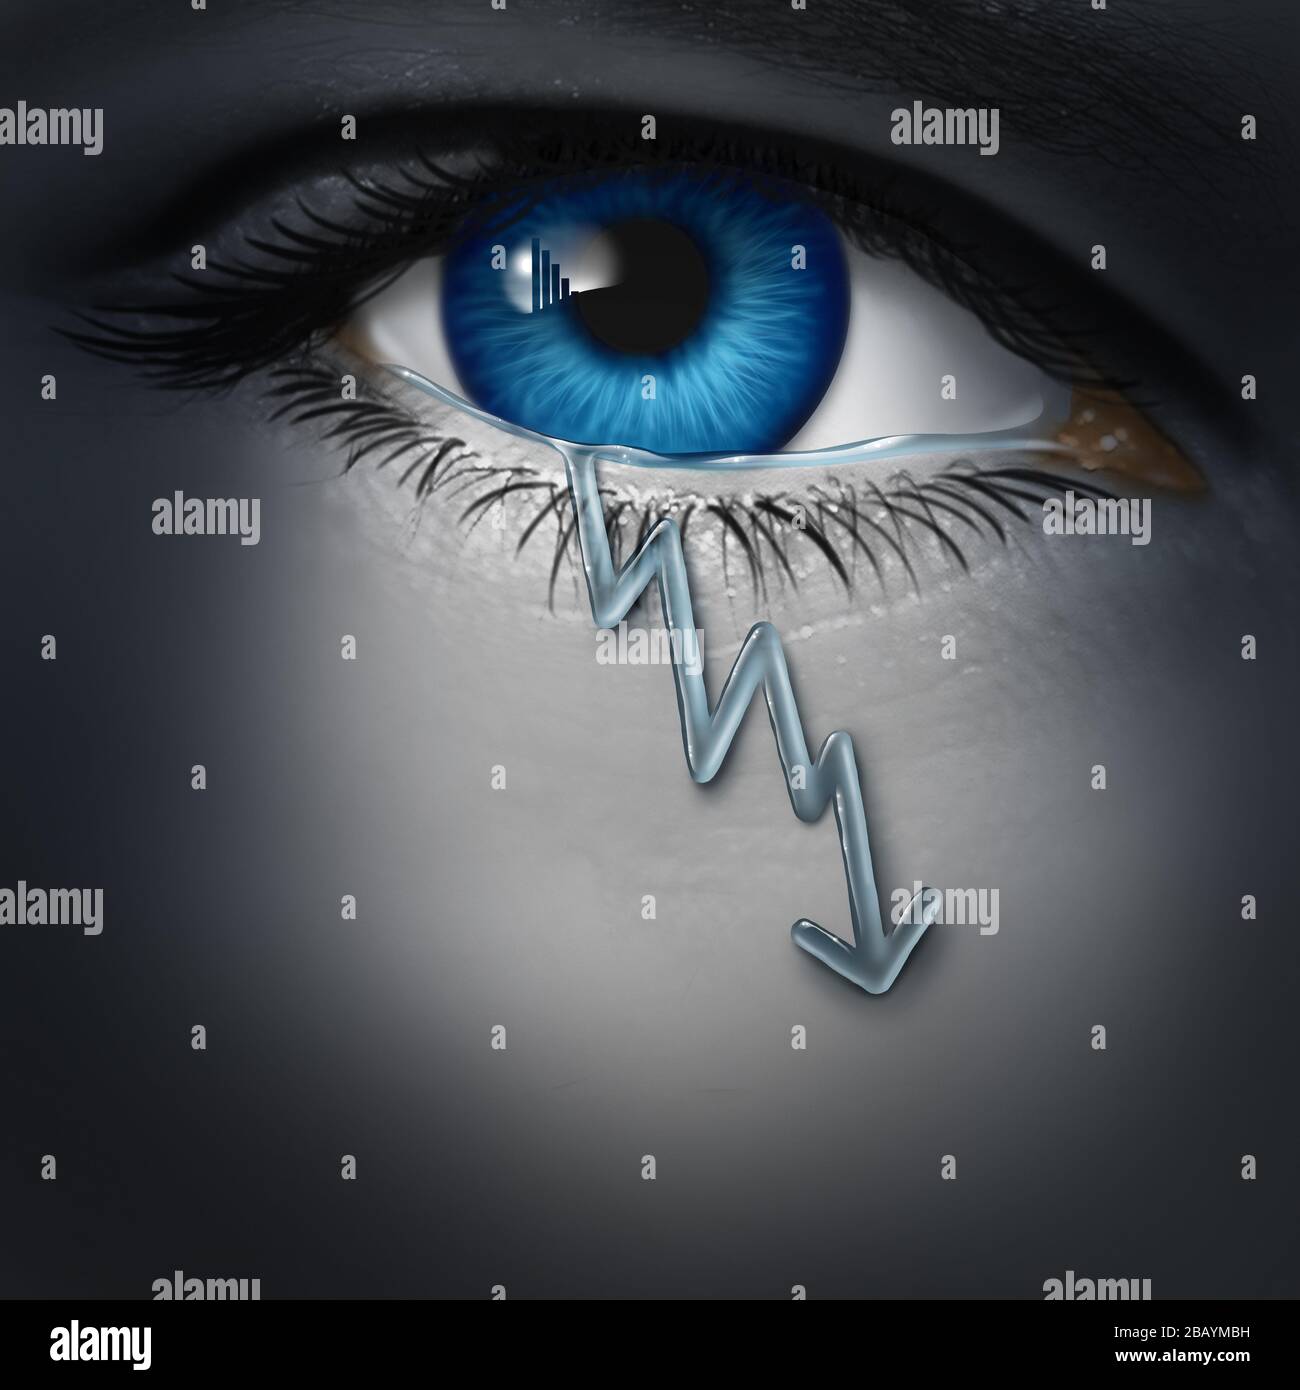 La depressione economica come investitore depresso con una goccia di lacrima modellata come un grafico finanziario in calo come simbolo per la recessione e l'economia fallita. Foto Stock